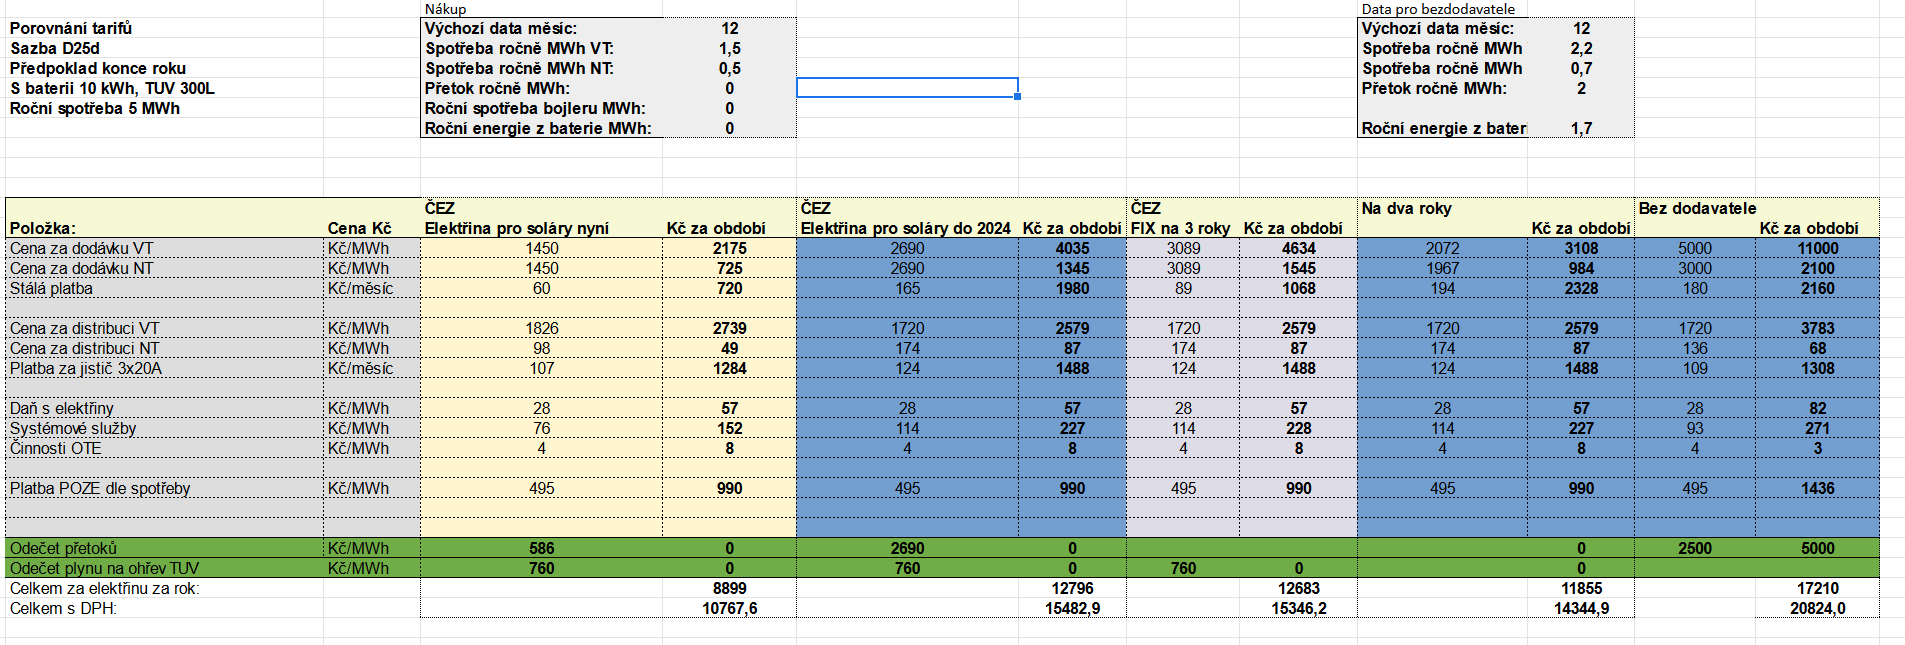 Screenshot 2021-12-31 at 09-32-54 Porovnání tarifů virtuální baterie od ČEZu a ostatních xlsx.png